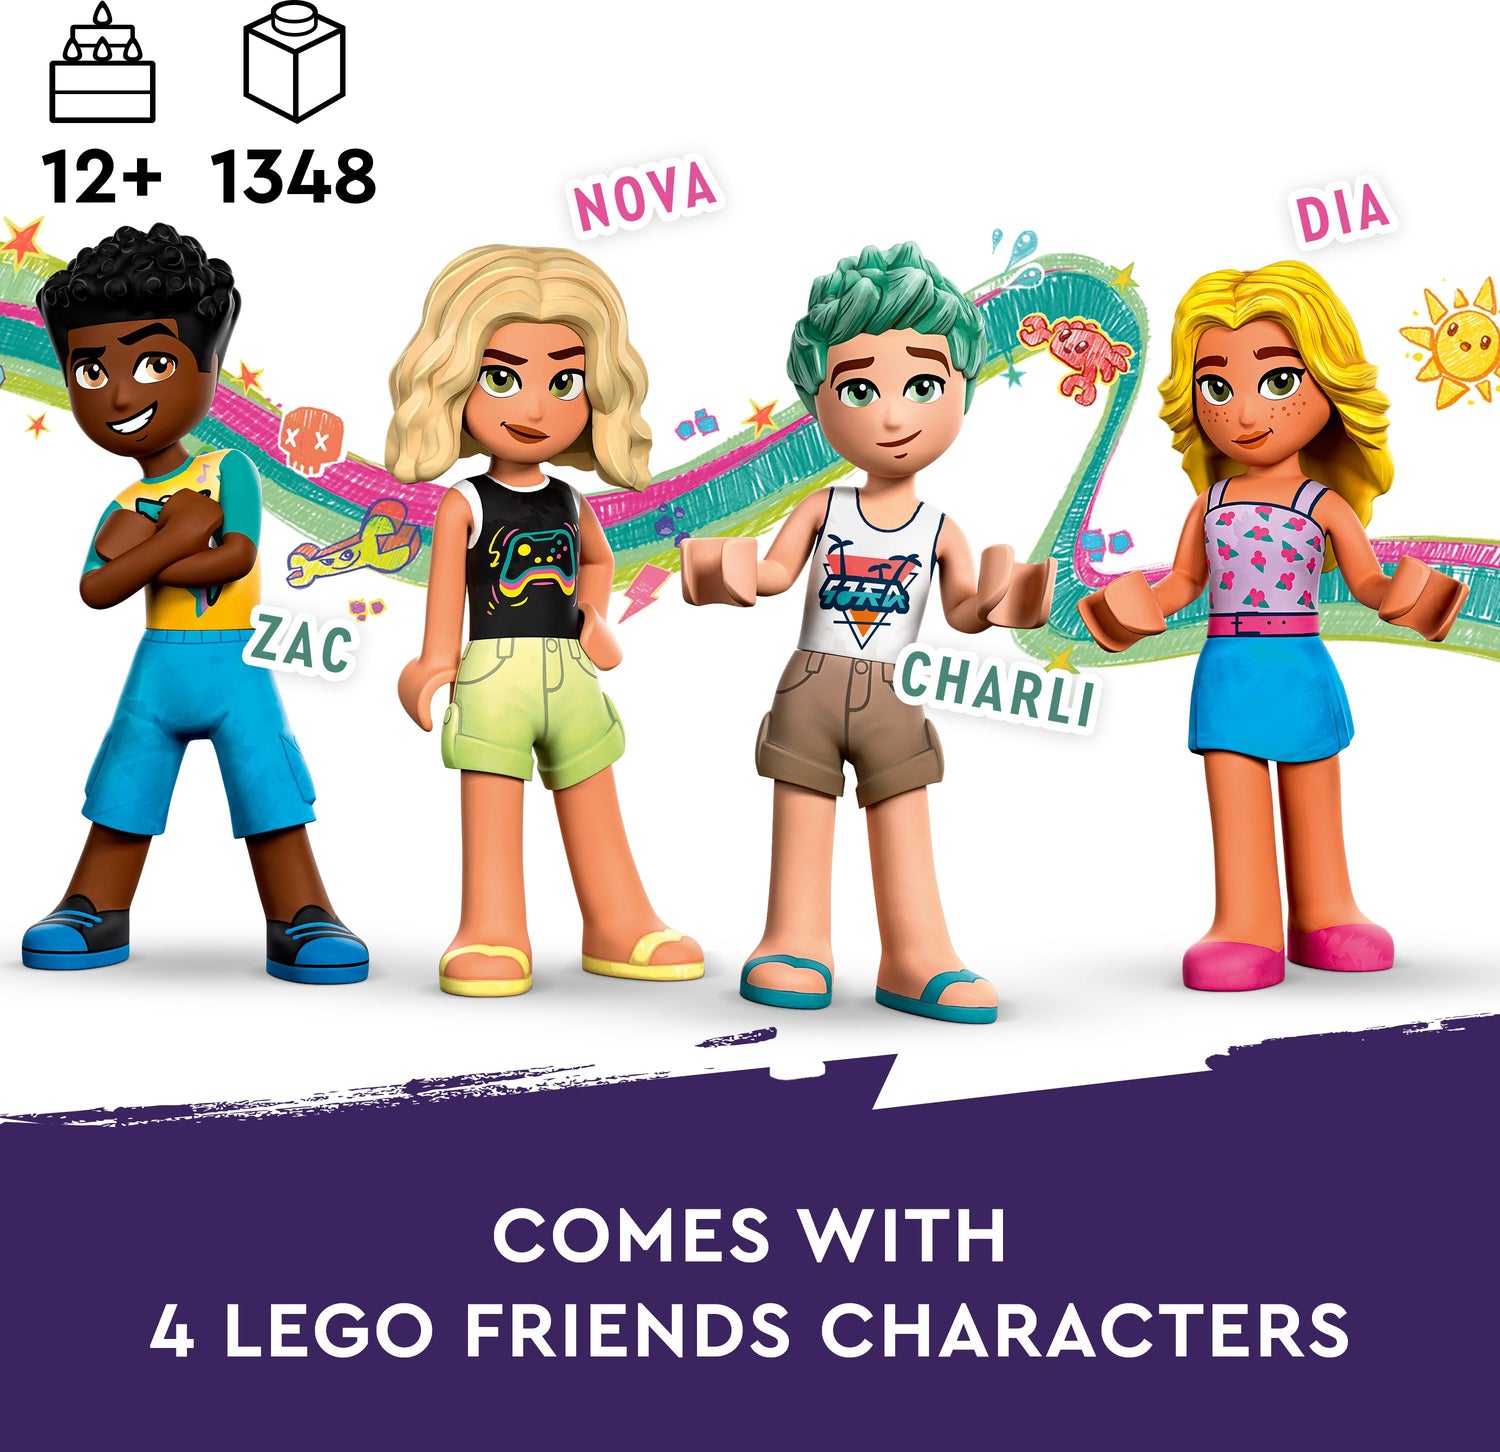 LEGO® Friends™ Beach Amusement Park Building Toy